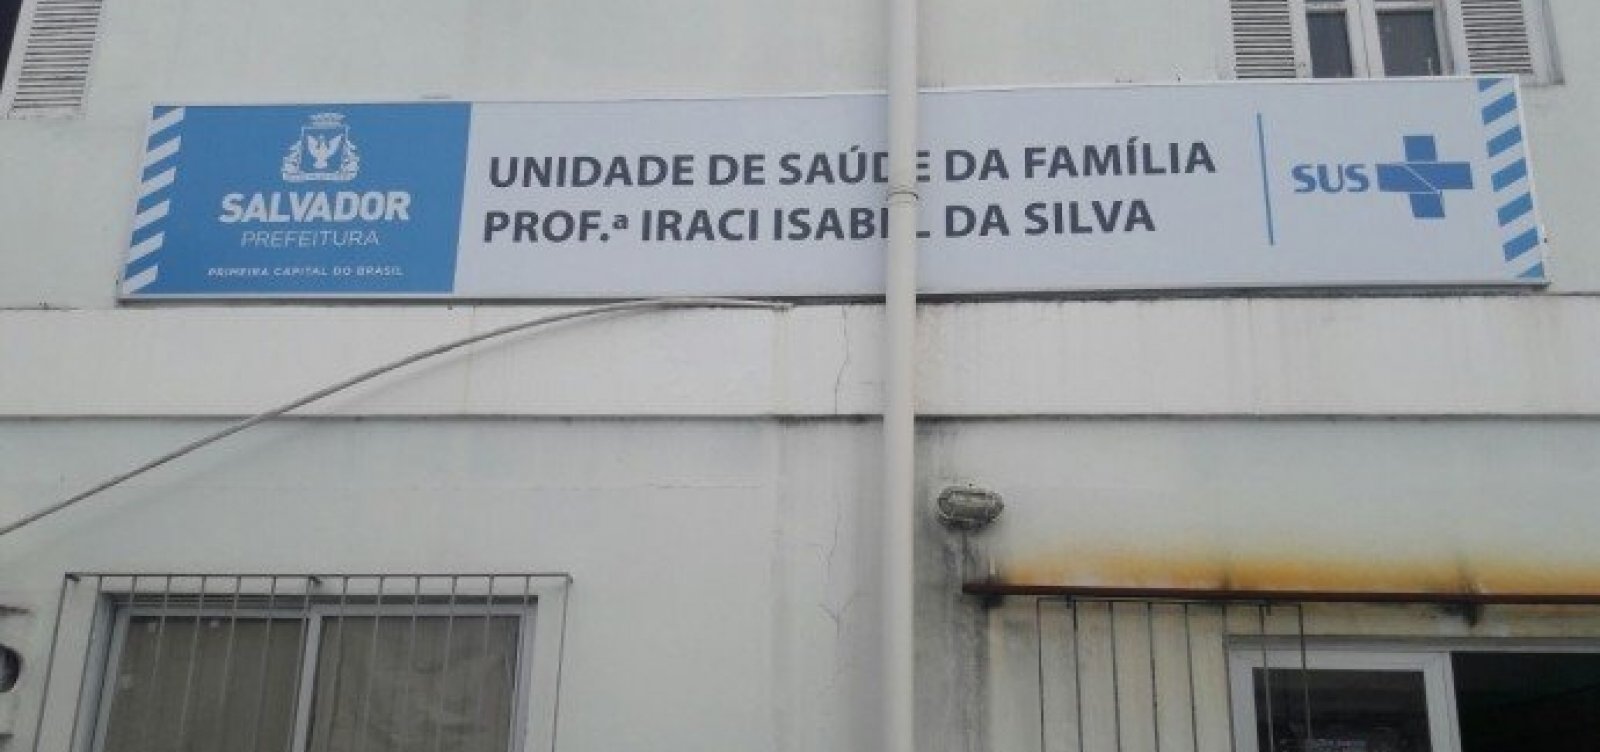 MP investiga pagamento irregular para equipe inexistente em posto de saúde em Salvador